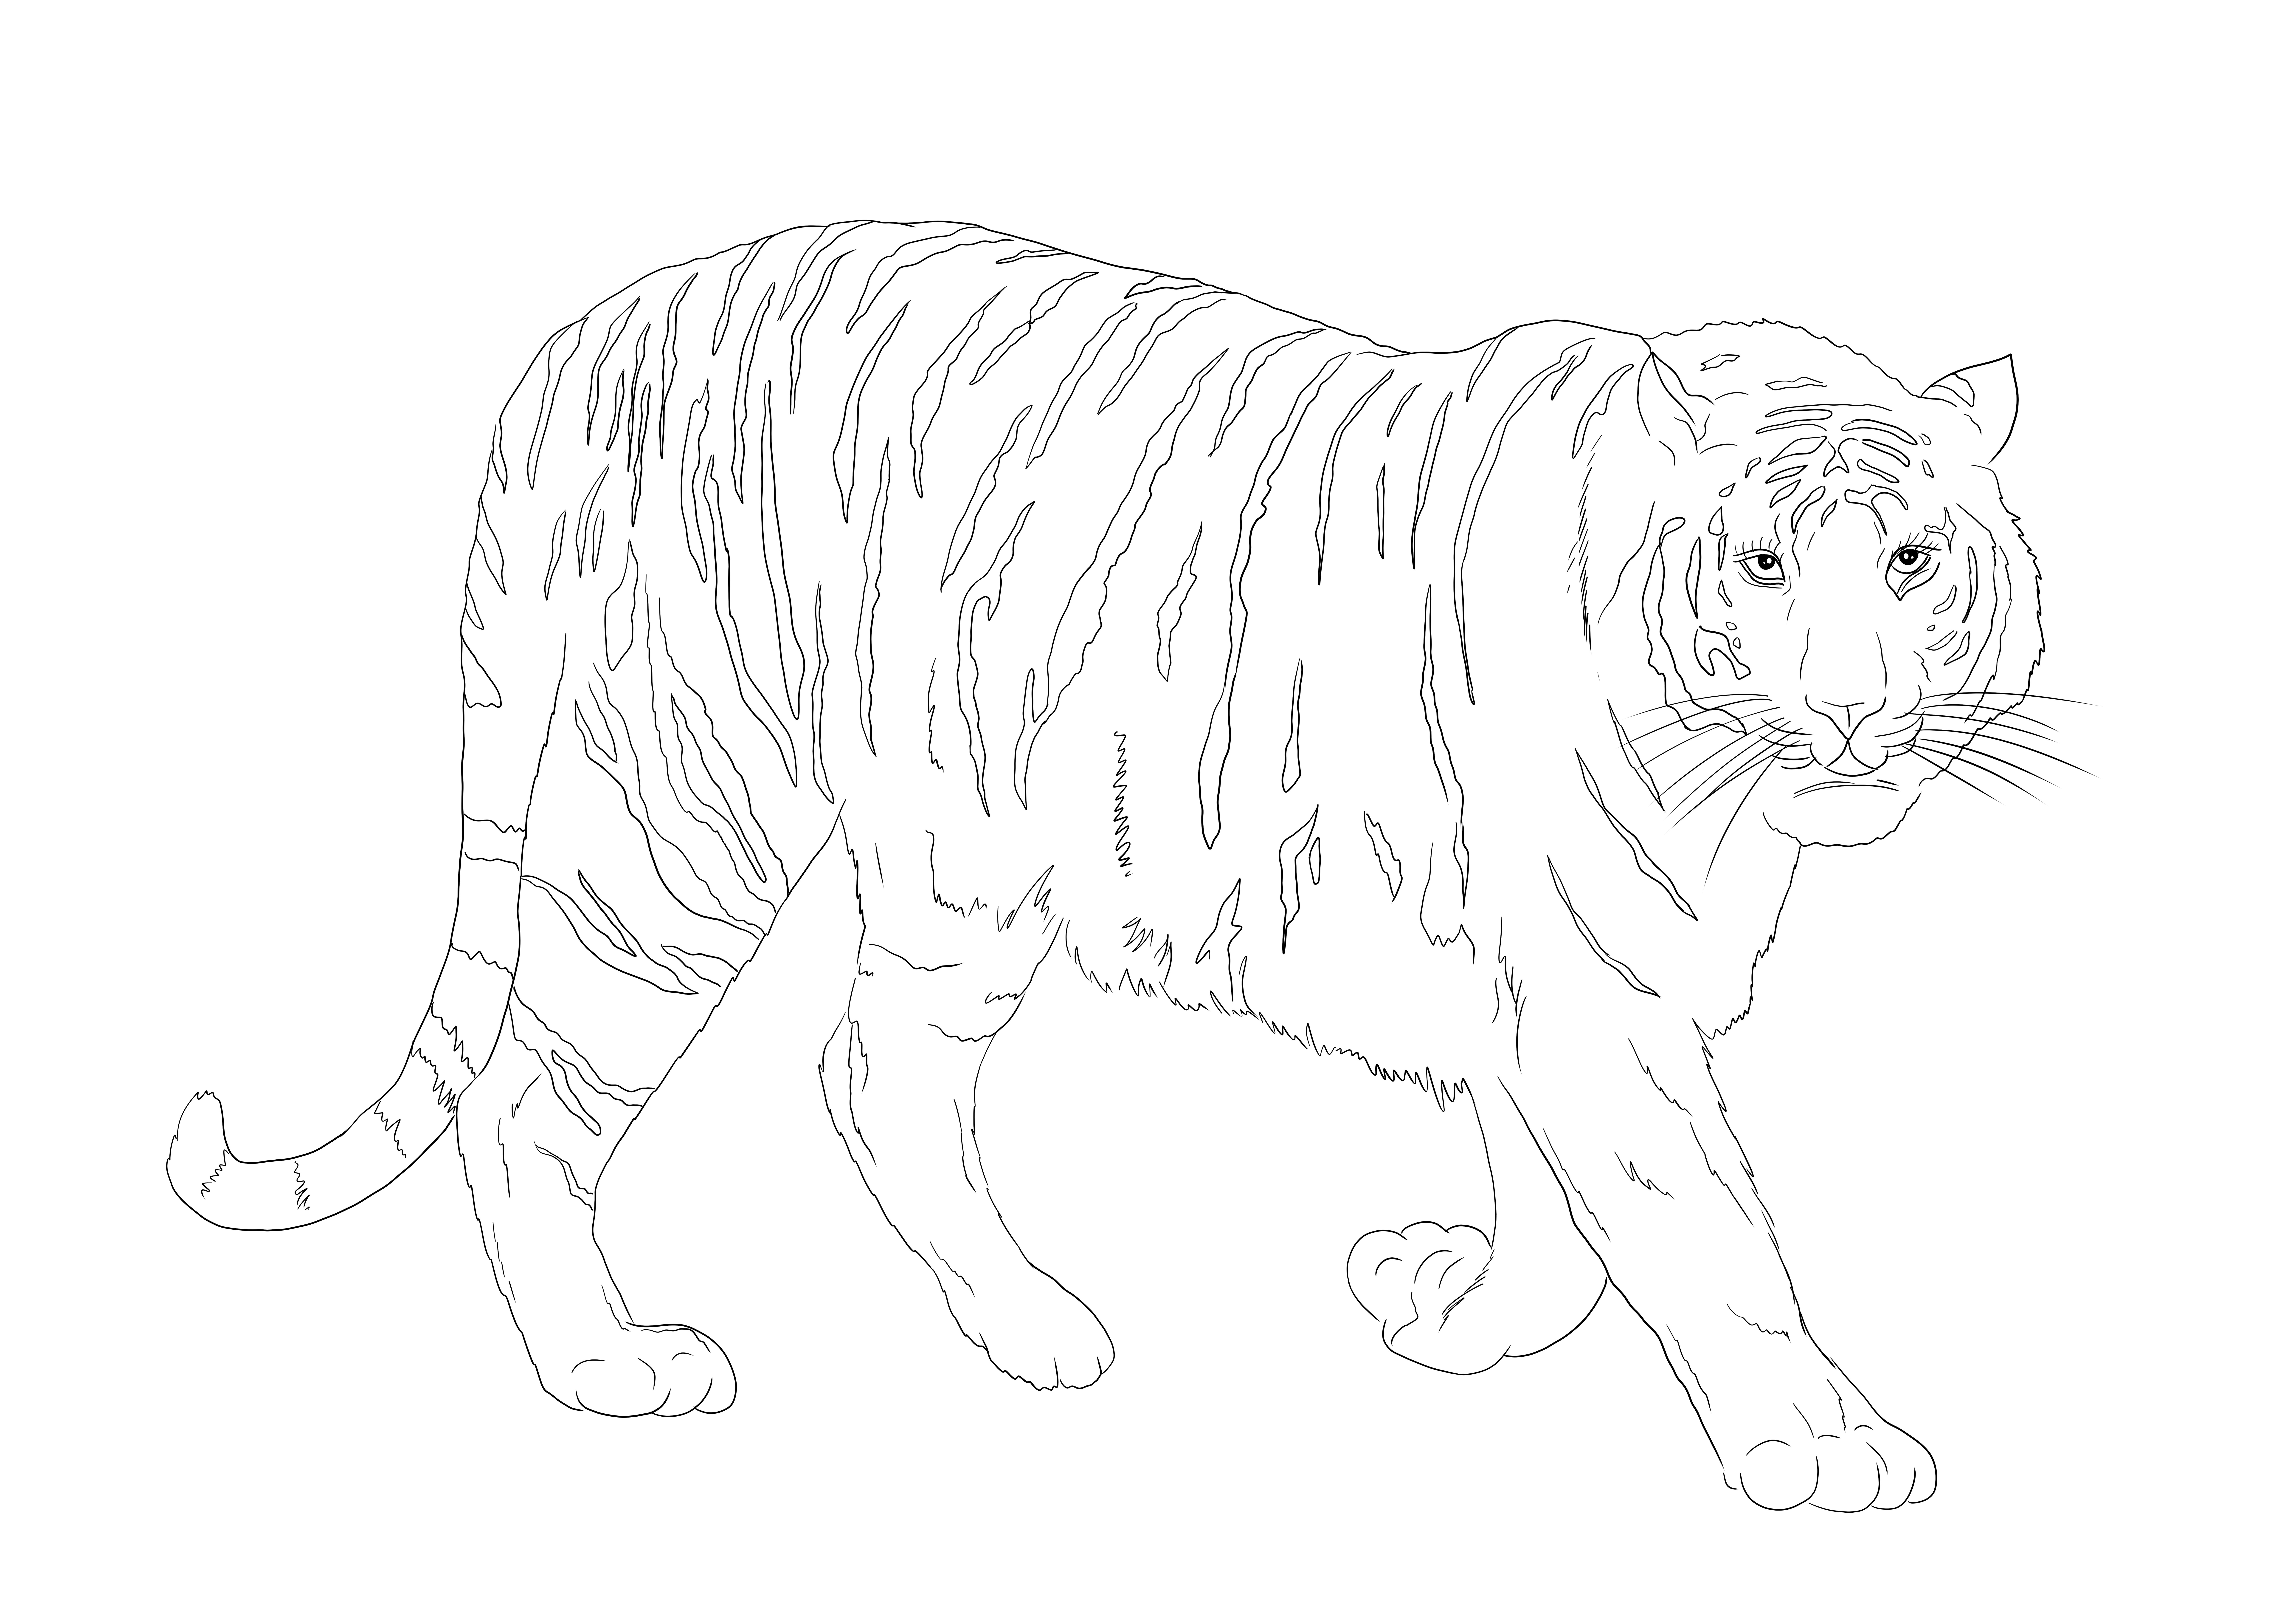 Tygrys bengalski do ściągnięcia za darmo lub wydrukowania i pokolorowania dla dzieci